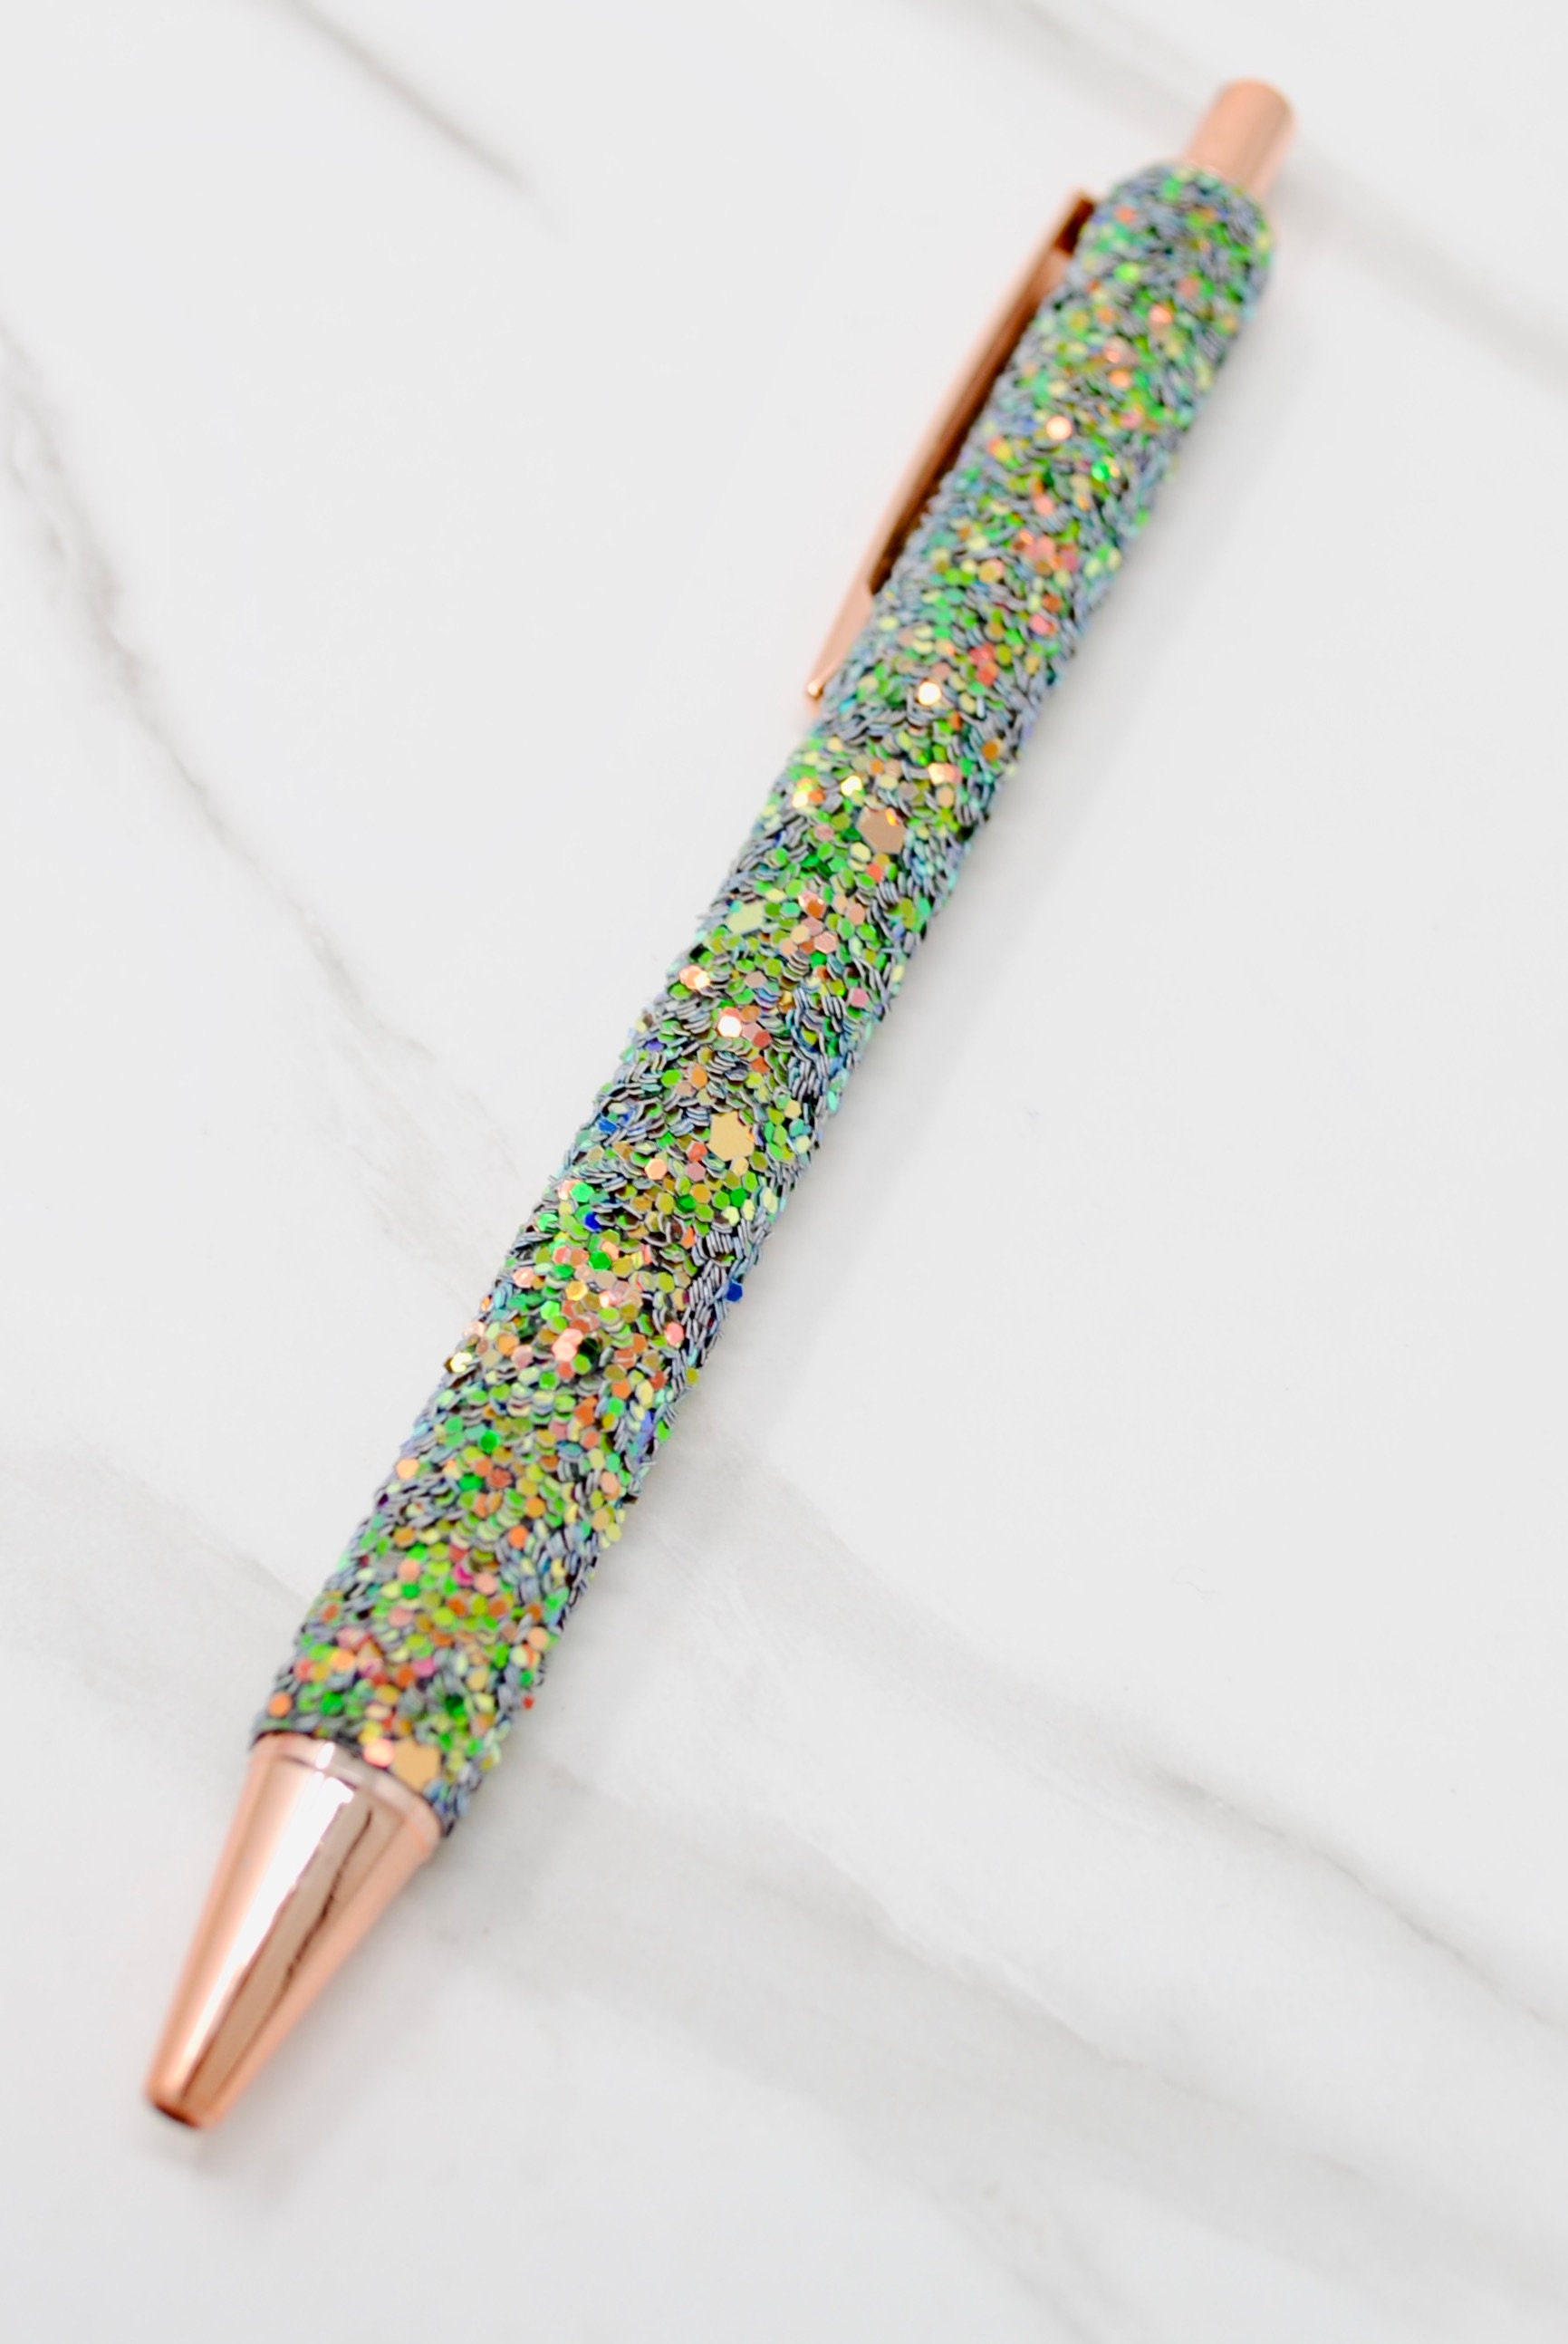 24 Colori Penne Glitterate Colorate, Pennarelli a Doppia Linea, Penne  Colorate Glitter Marcatori per Disegno Artistico, Fare Biglietti di Auguri